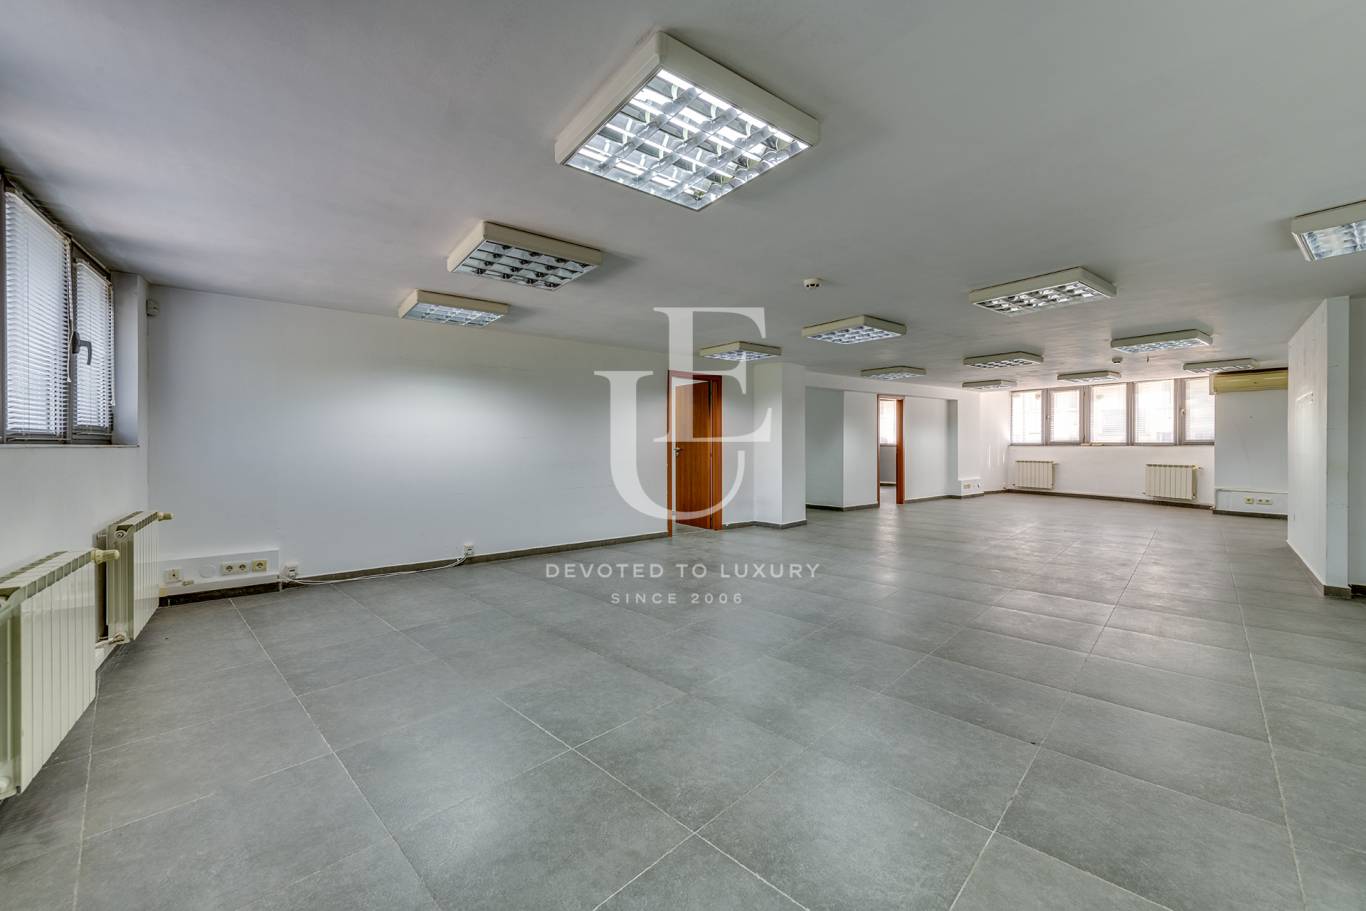 Офис под наем в София, Манастирски ливади - изток - код на имота: K20583 - image 4